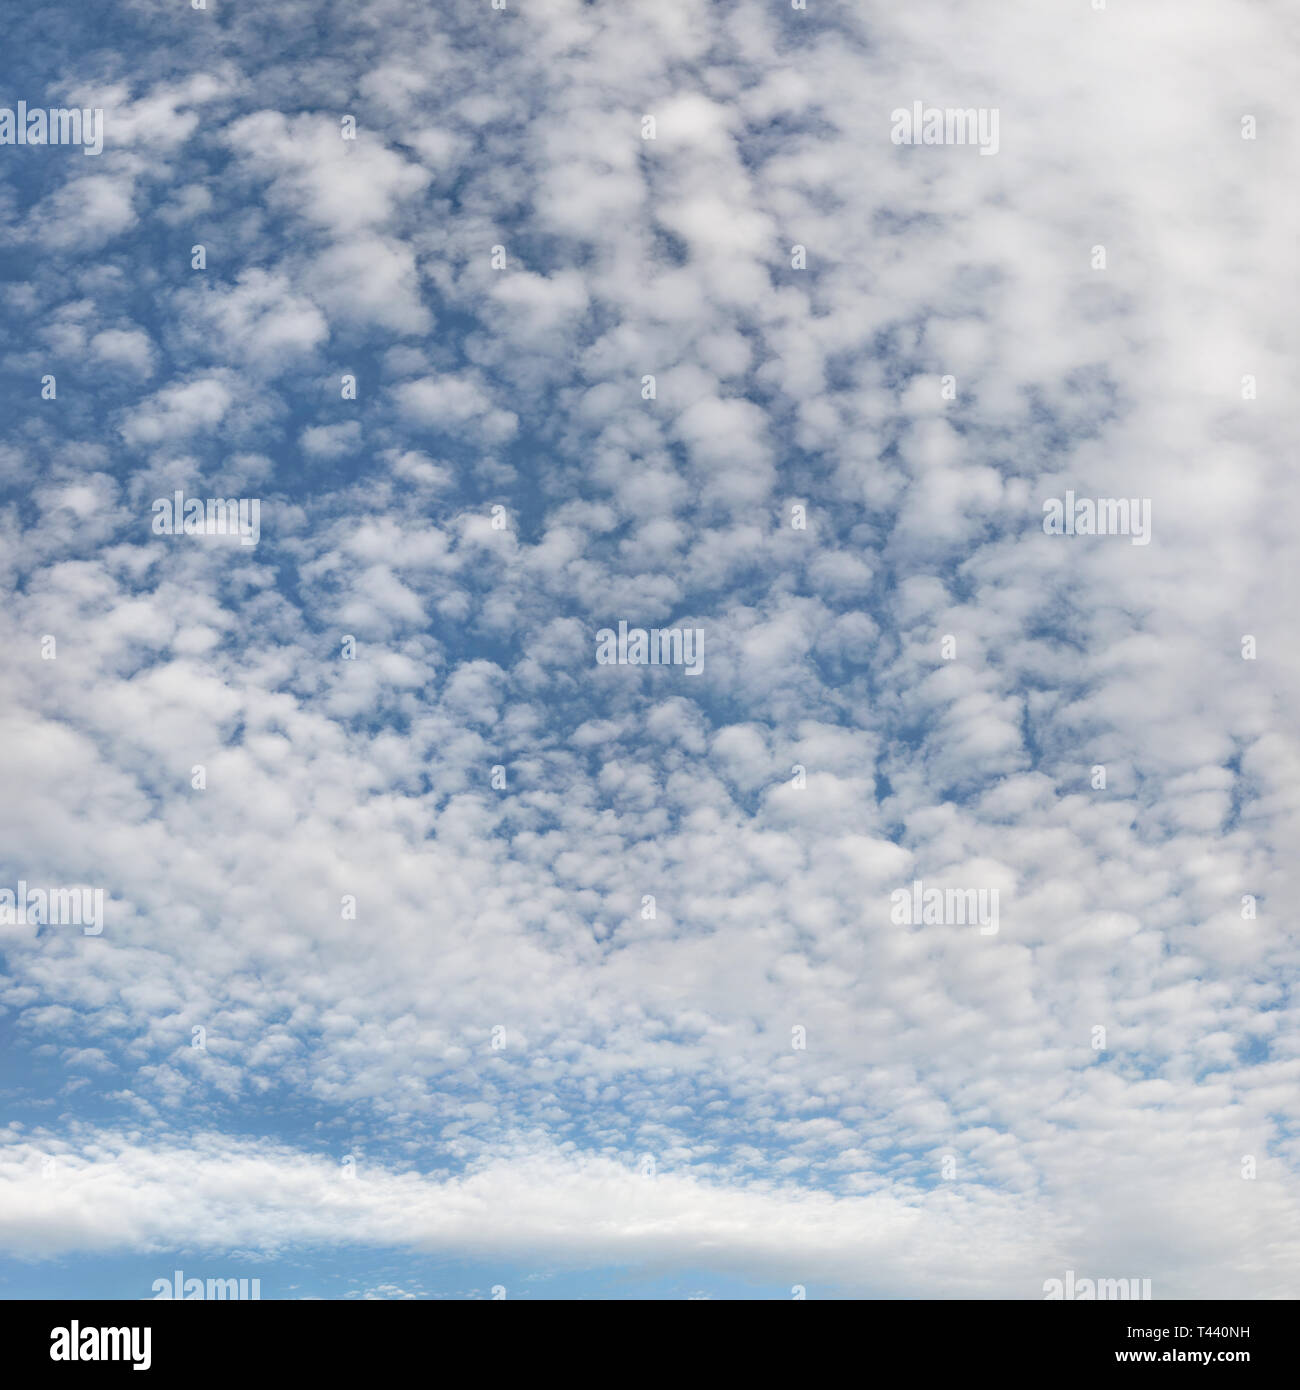 Photo haute résolution du ciel avec fluffy ( altocumulus - cirrocumulus / ciel maquereau ) les nuages. Banque D'Images